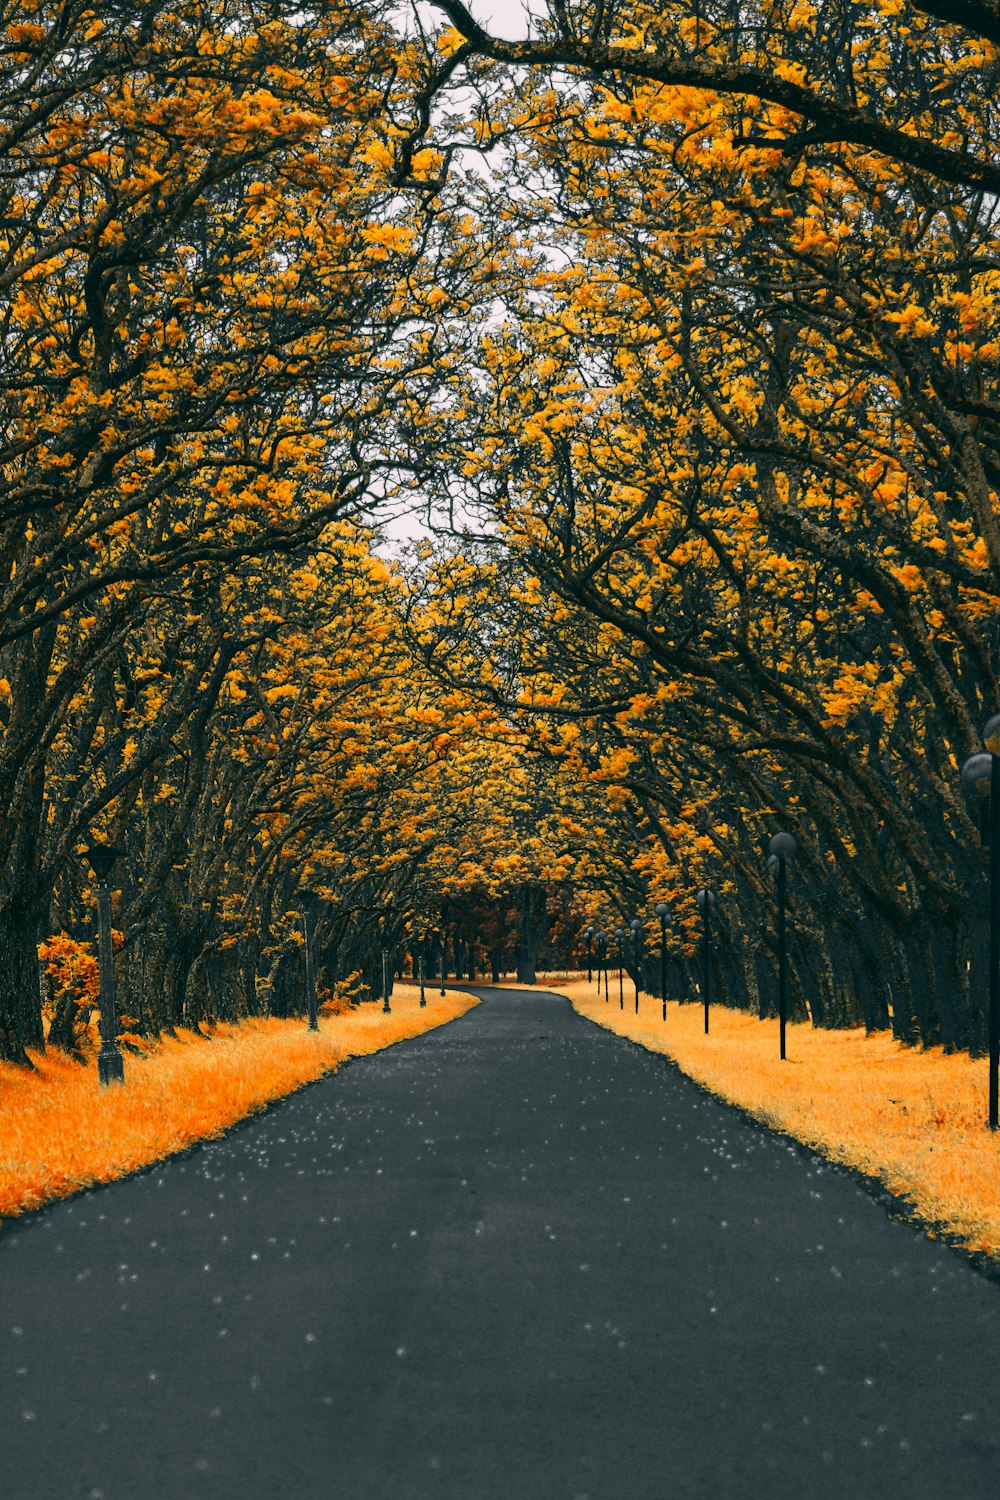 strada asfaltata tra gli alberi